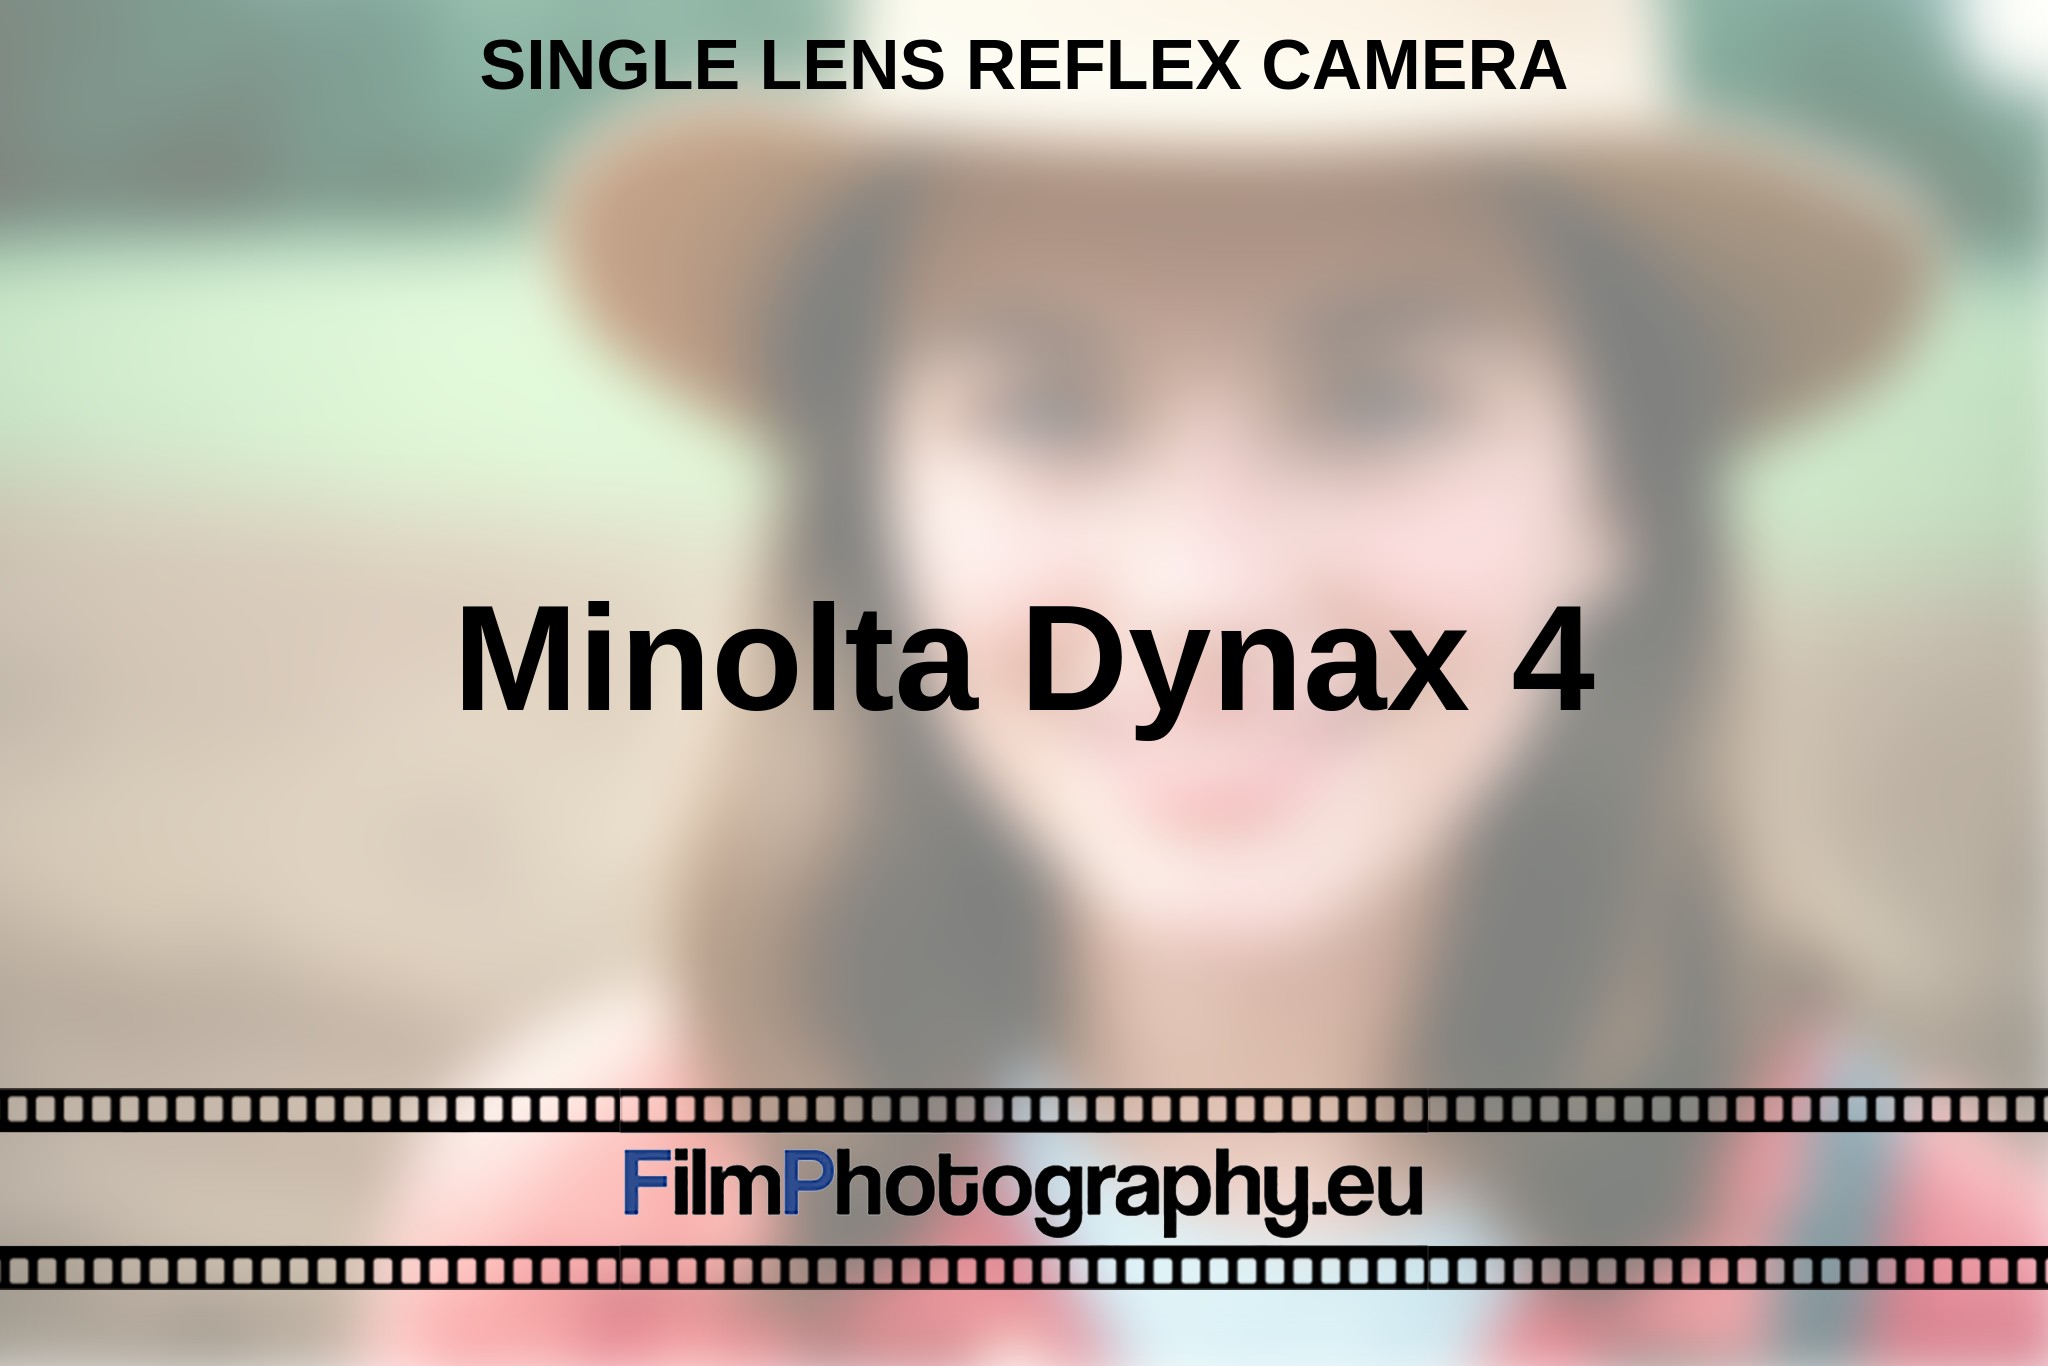 minolta-dynax-4-single-lens-reflex-camera-en-bnv.jpg